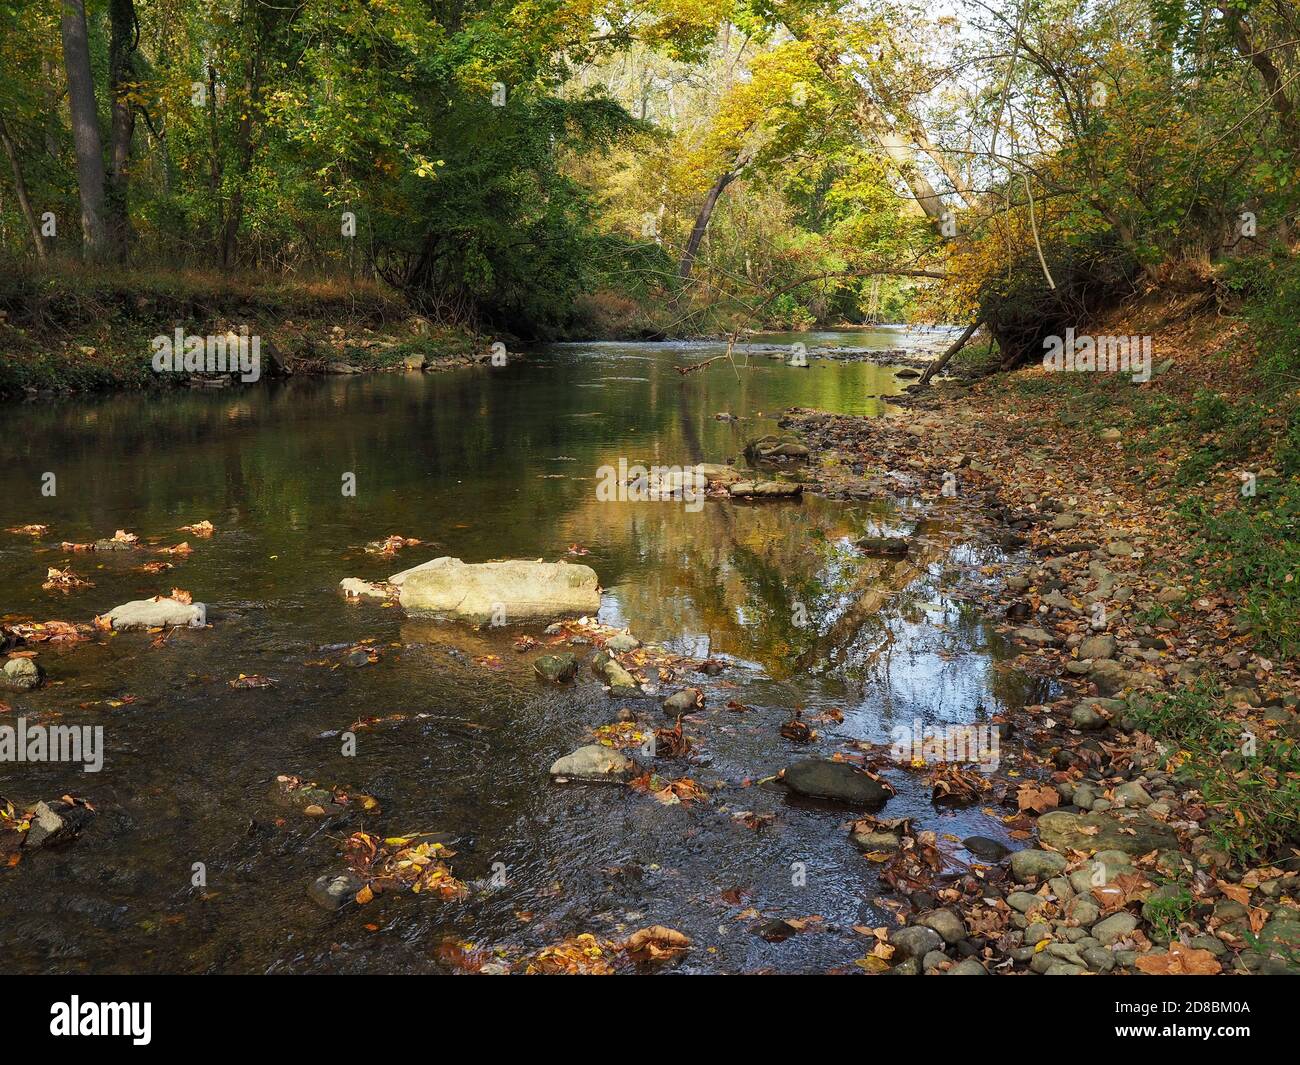 Un petit ruisseau boisé avec des roches reflète les couleurs changeantes du feuillage le jour d'octobre, lorsque les feuilles rouges, jaunes et brunâtres commencent à s'accumuler Banque D'Images